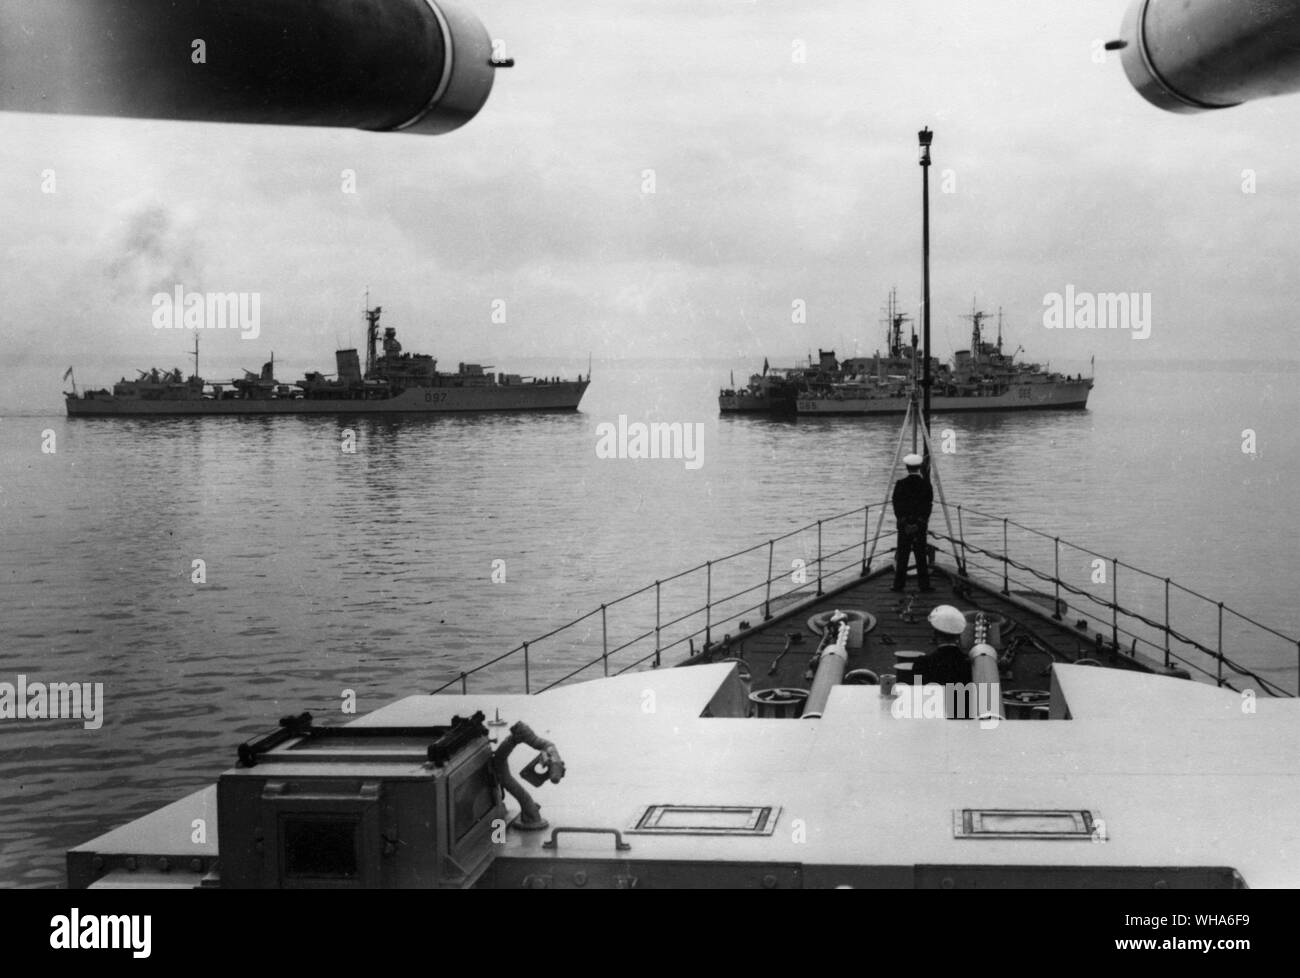 Du HMS Gabbard en Douarnanez Bay 1951. Ravitaillement des destroyers après avoir participé à des exercices de l'OTAN. HMS gauche droite. Corunna HMS Scorpion côté éloigné. Or l'appel de demandes centre pétrolier Rangers. Le HMS St james côté droit près de Banque D'Images